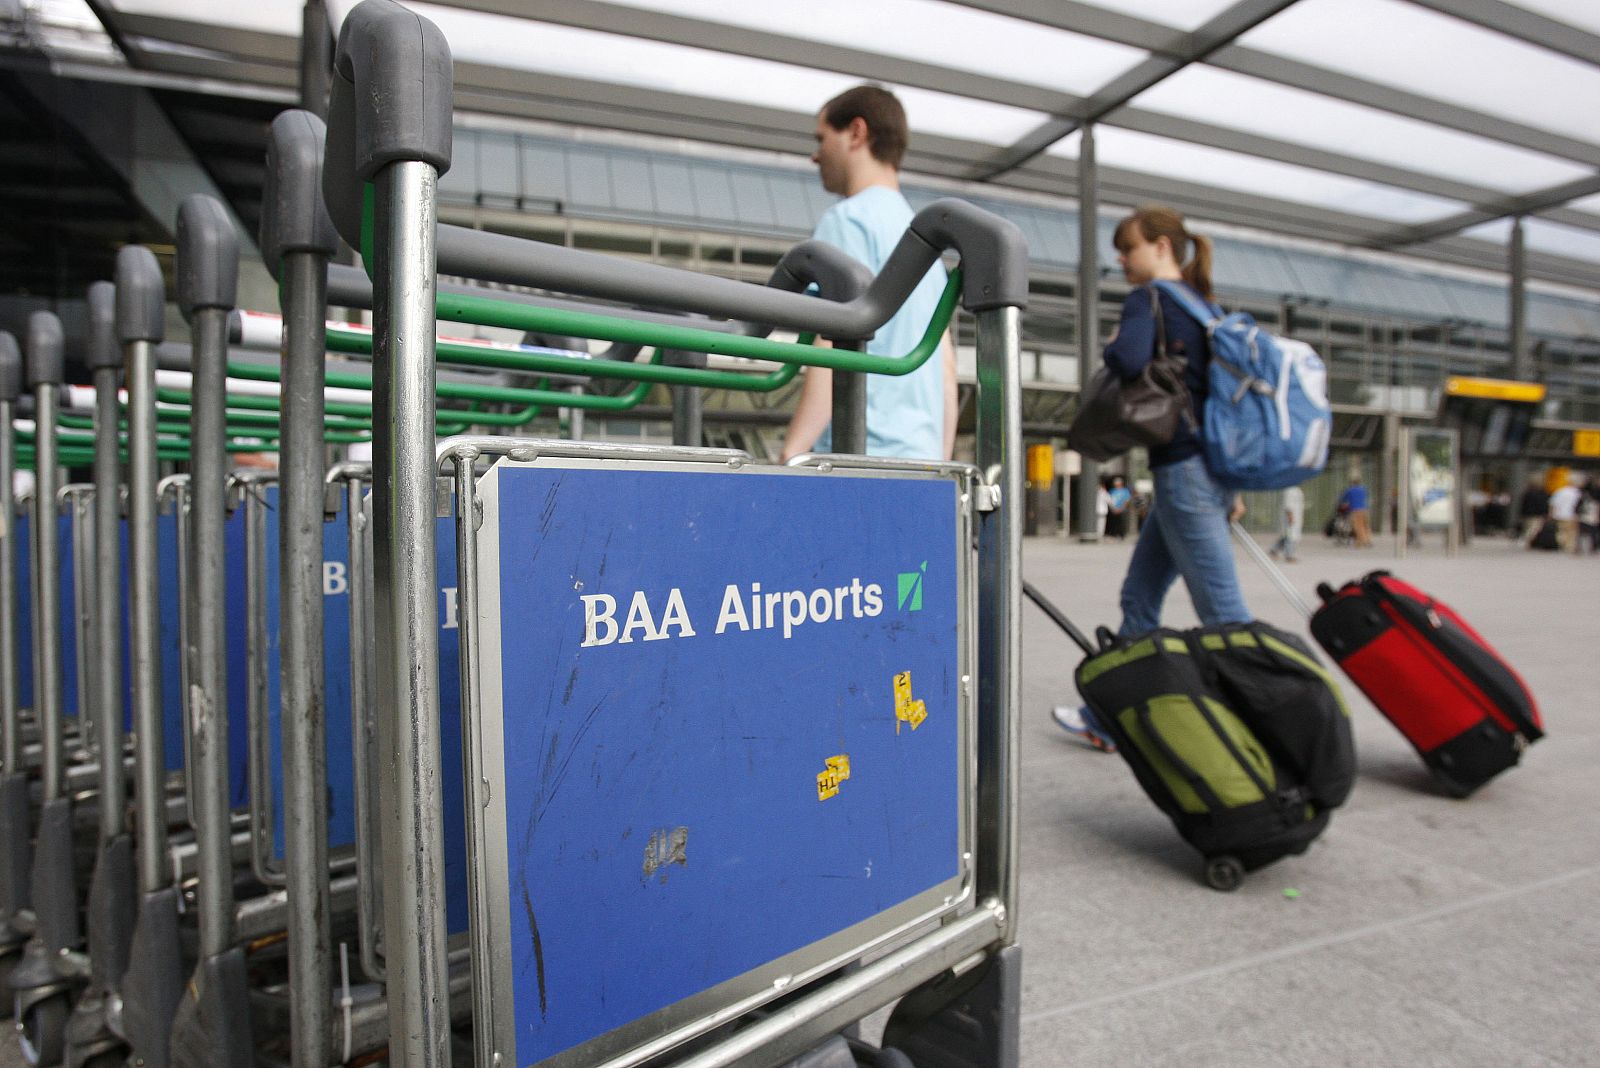 BAA gestiona los aeropuertos de Heathrow, Gatwick, Stansted y Southampton, en Inglaterra, y Glasgow, Edimburgo y Aberdeen, en Escocia.